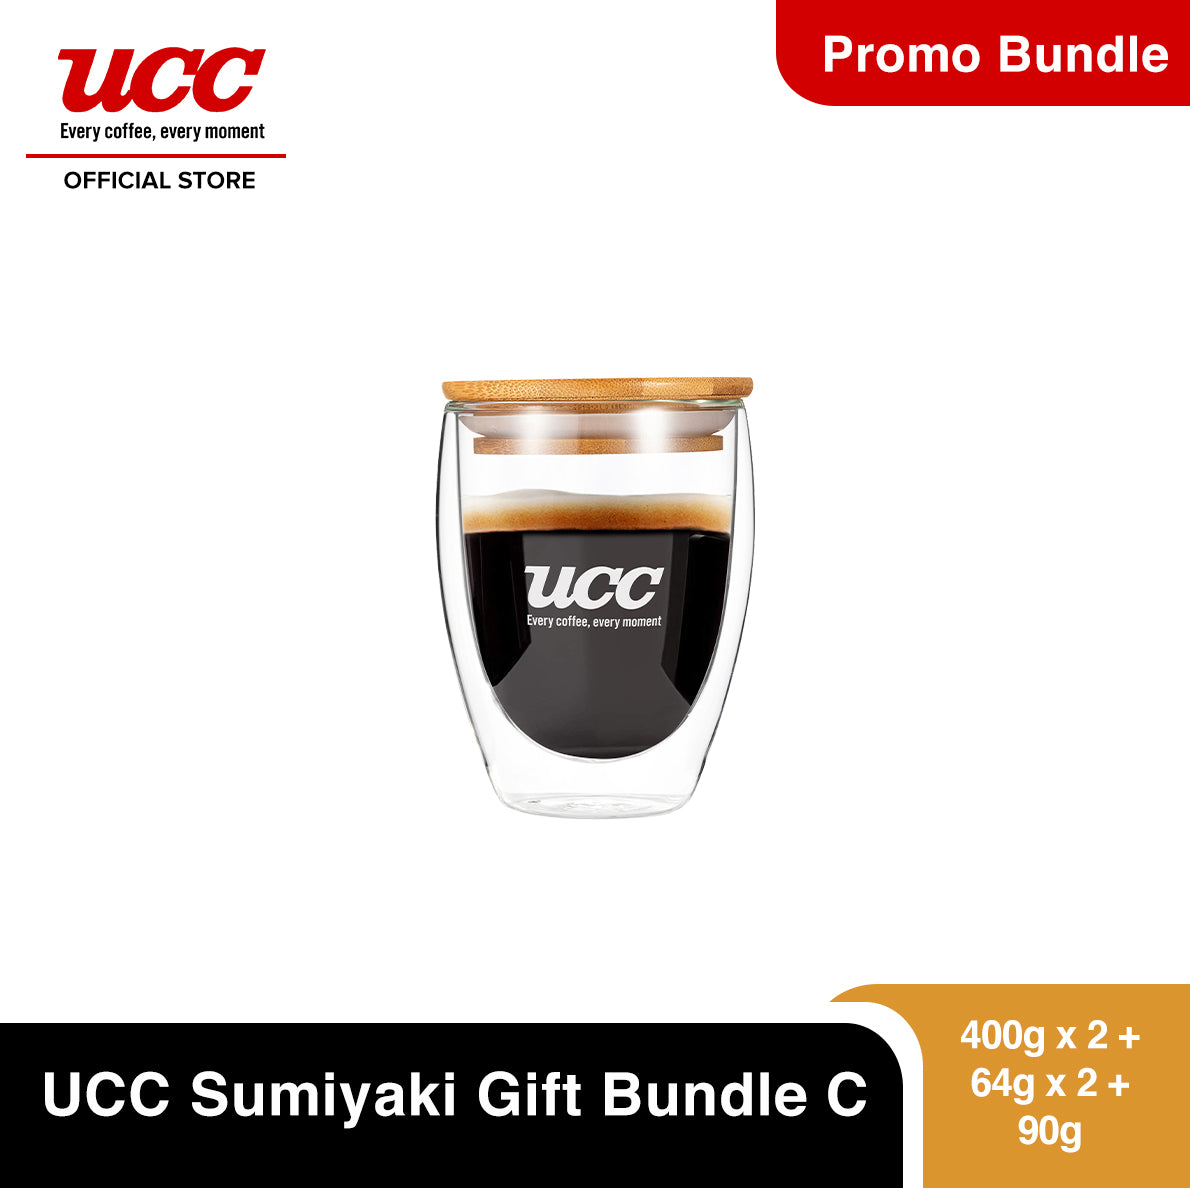 UCC Sumiyaki Gift Bundle C